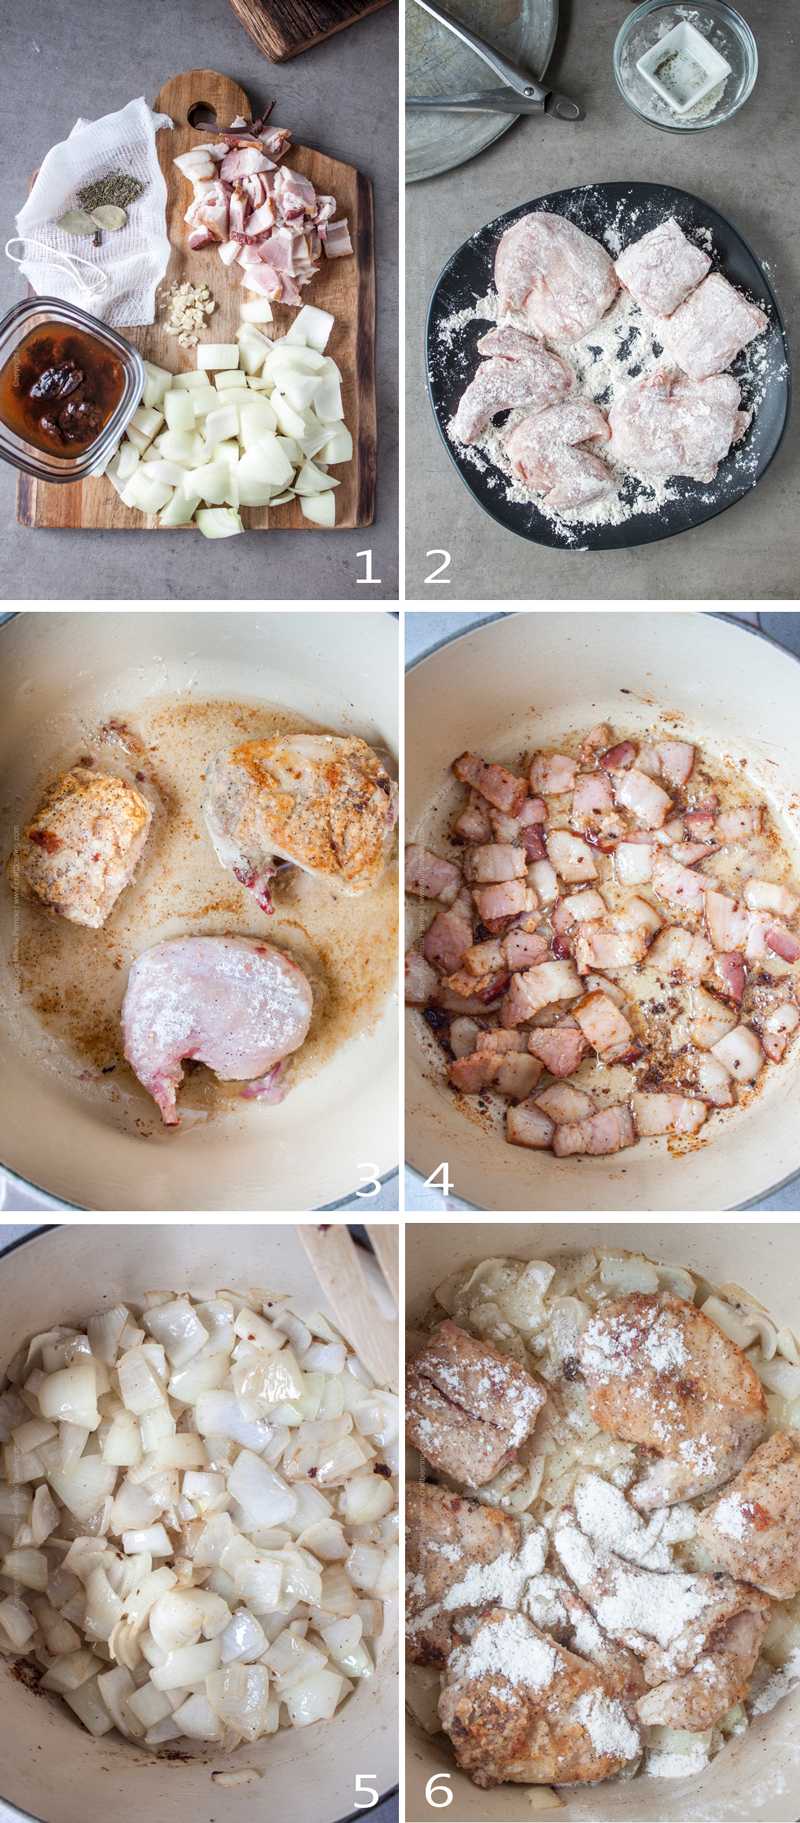 Steps to make Belgian rabbit stew